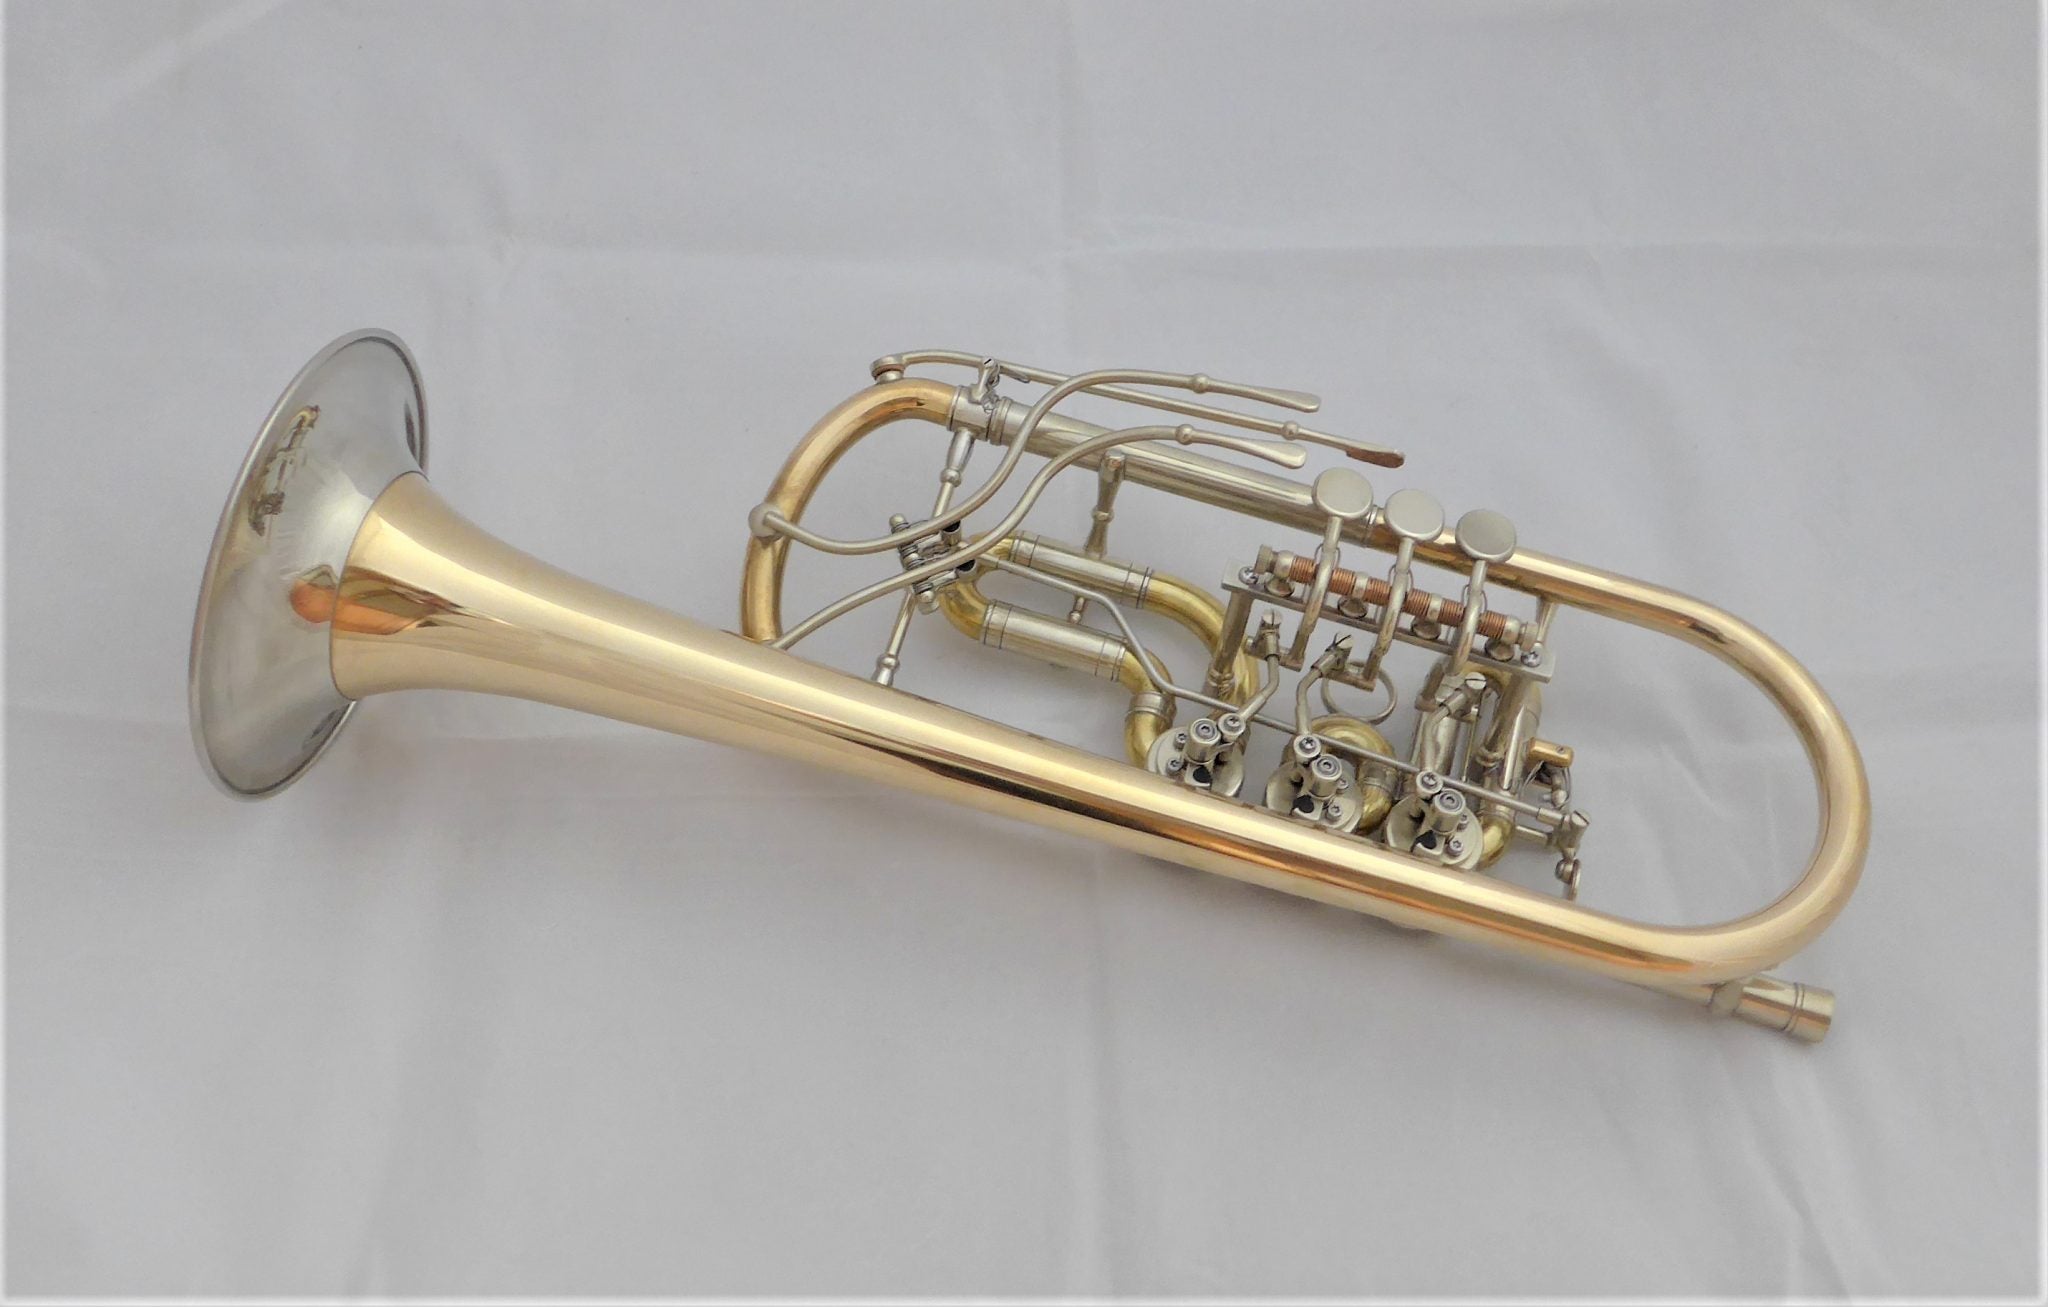 Bosc - Rotary trumpet “Elektra” in C